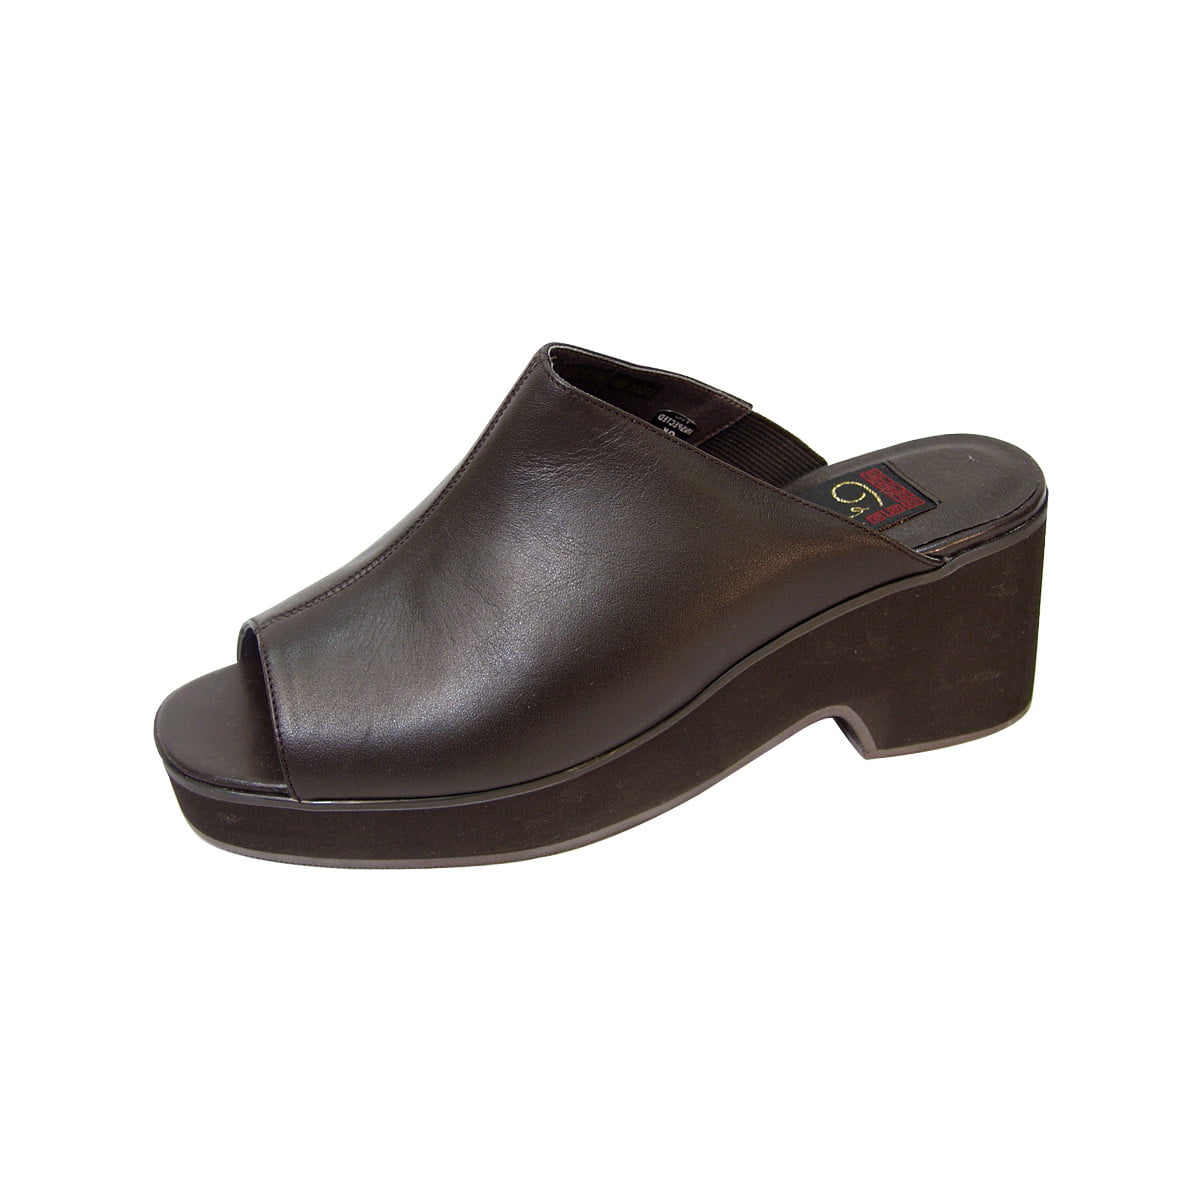 PEERAGE Leena Women Extra Wide Width Mid Heel Leather Sandals - Walmart.com